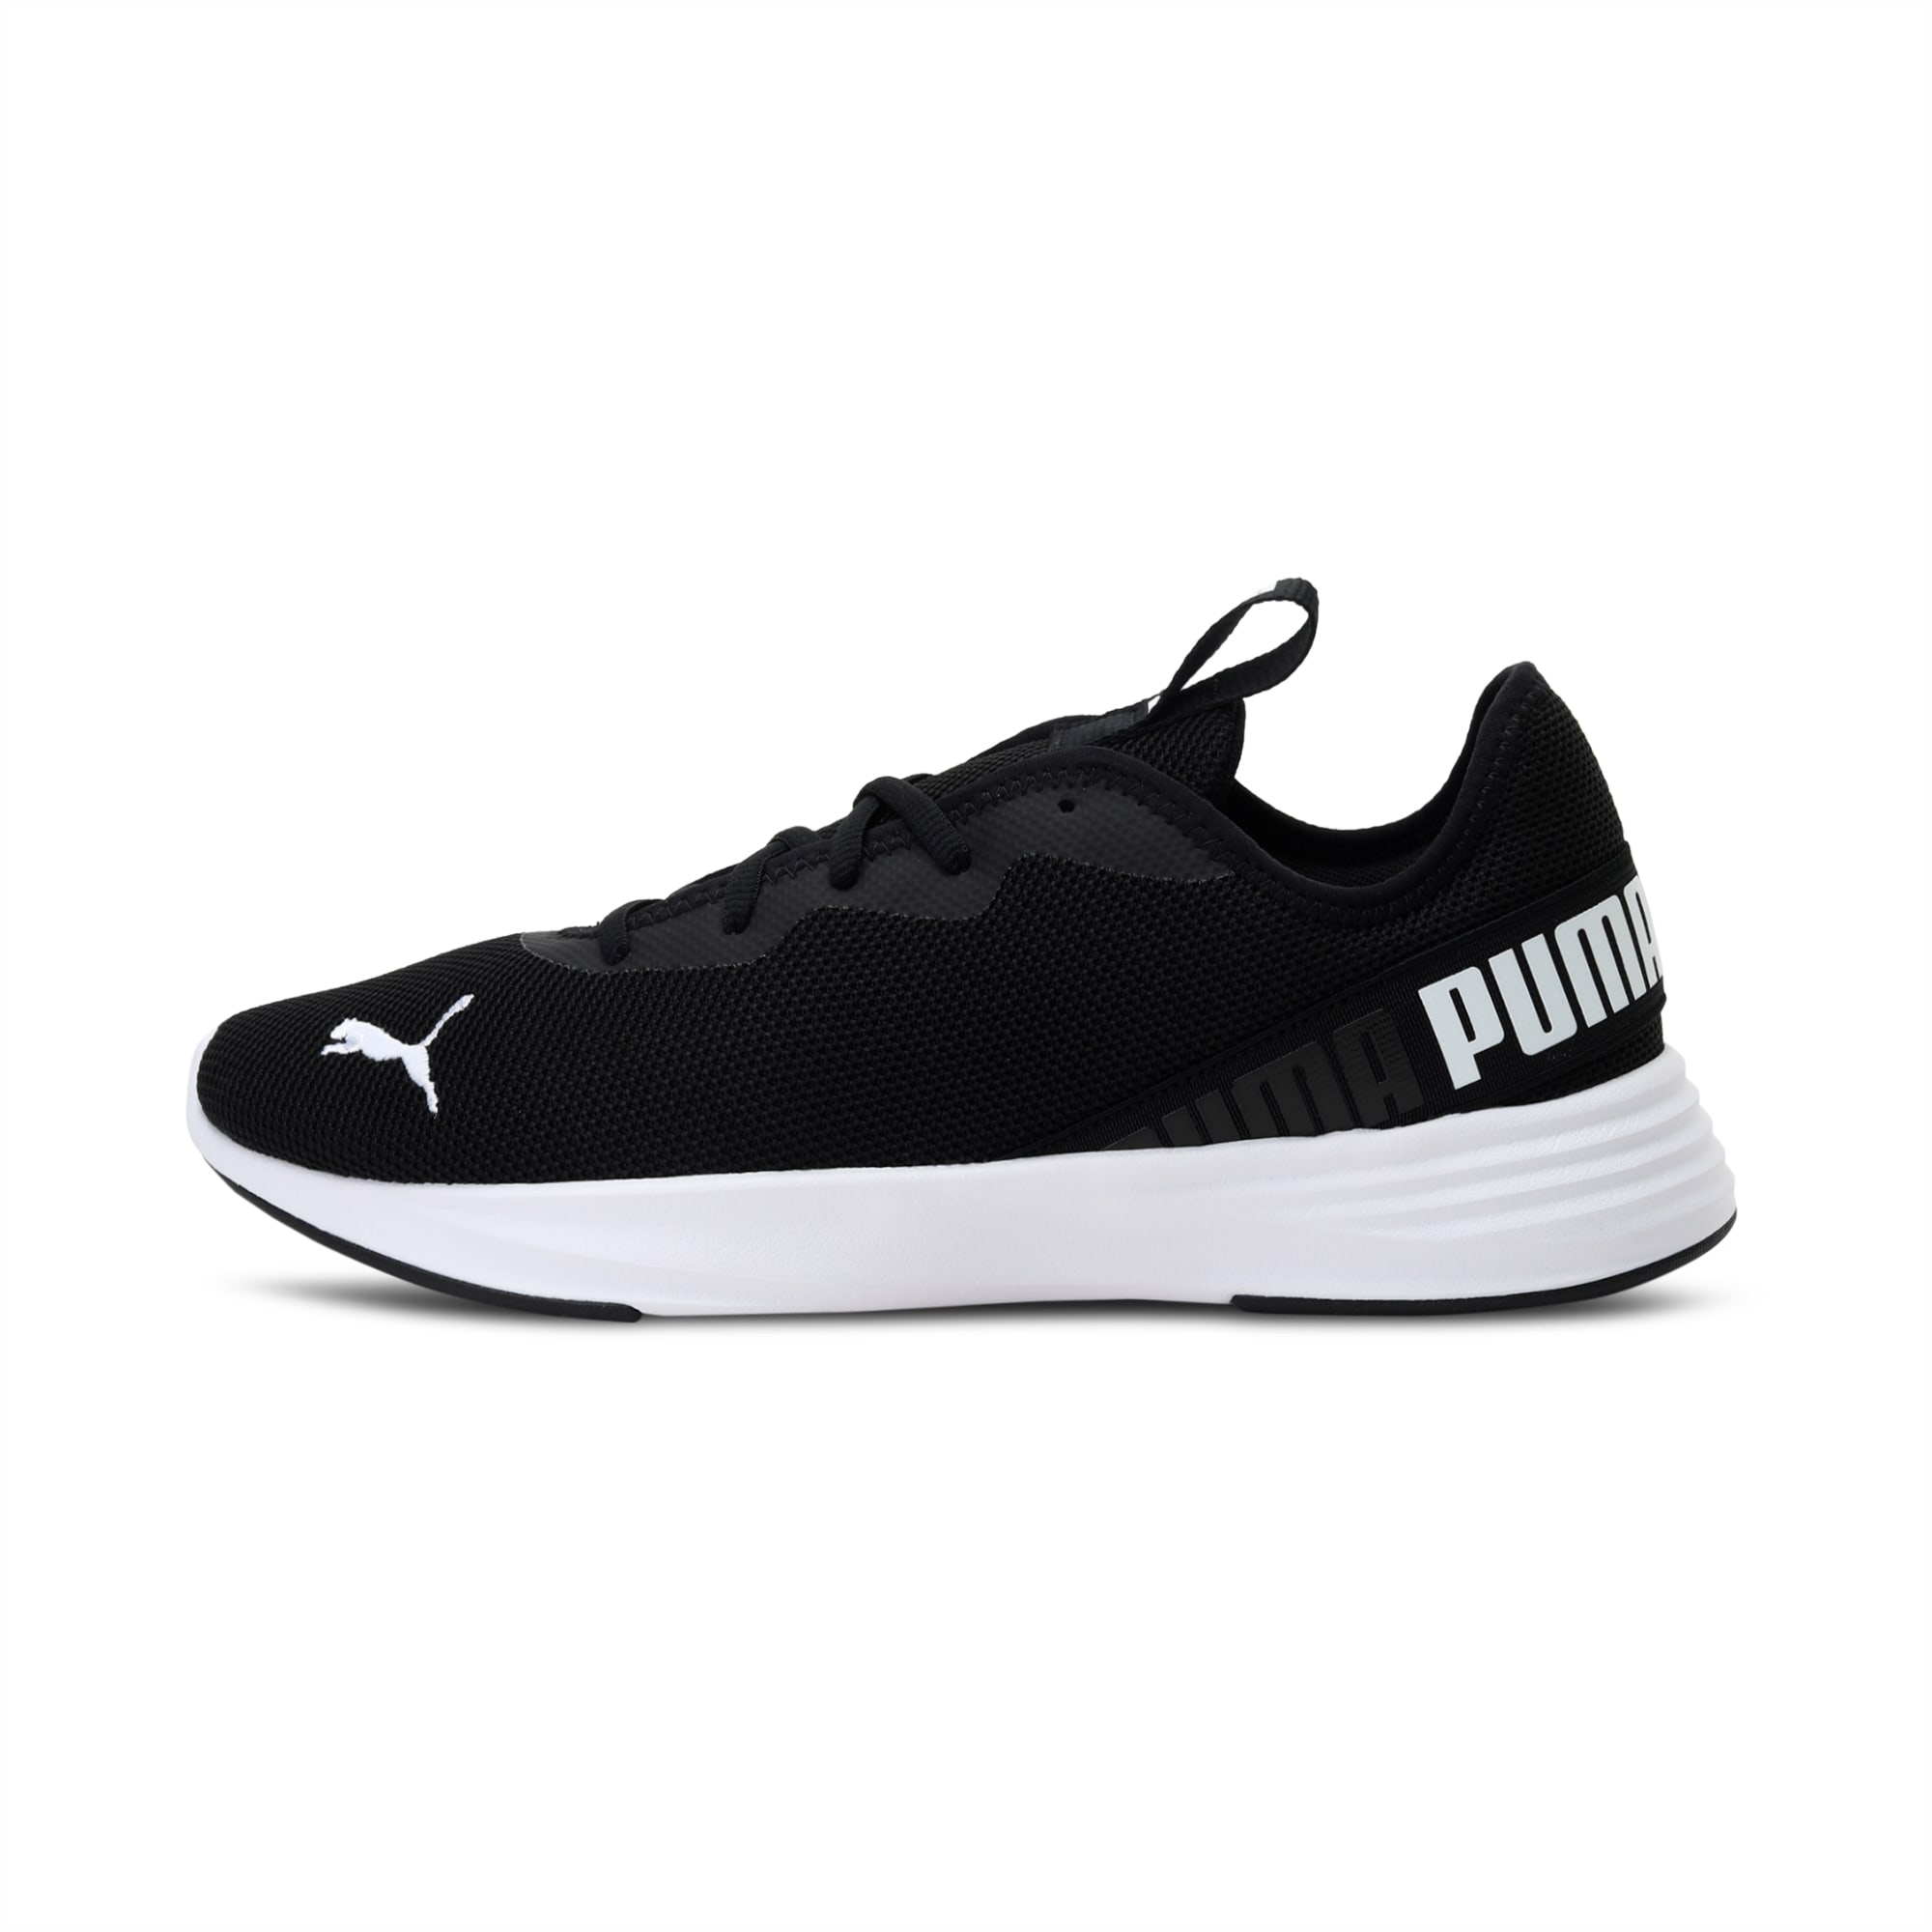 Hustle XT Men's Running Shoes | PUMA